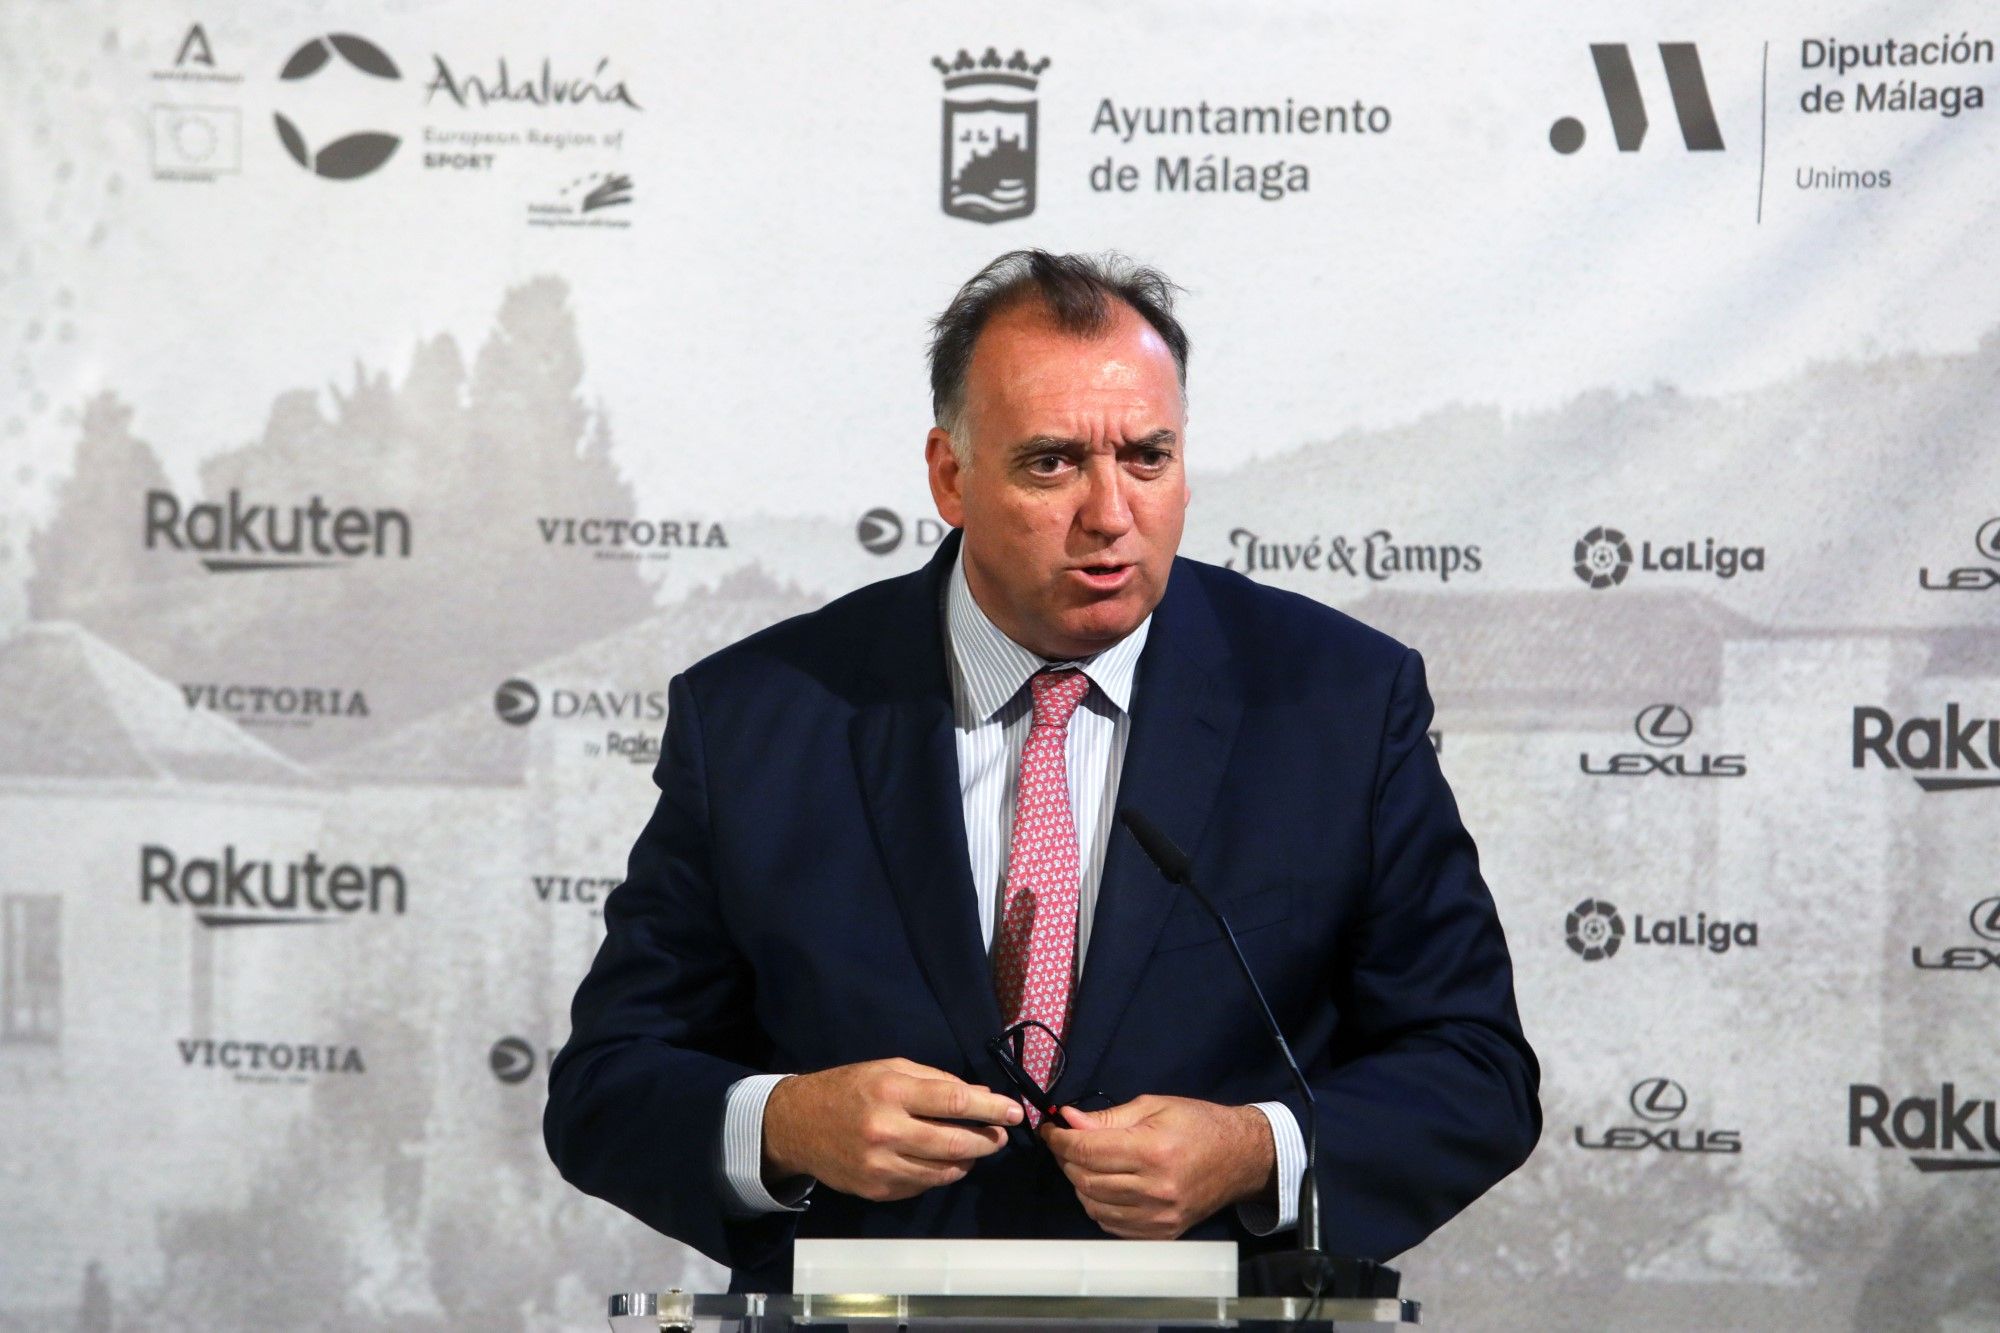 La Copa Davis se presenta en el Ayuntamiento de Málaga